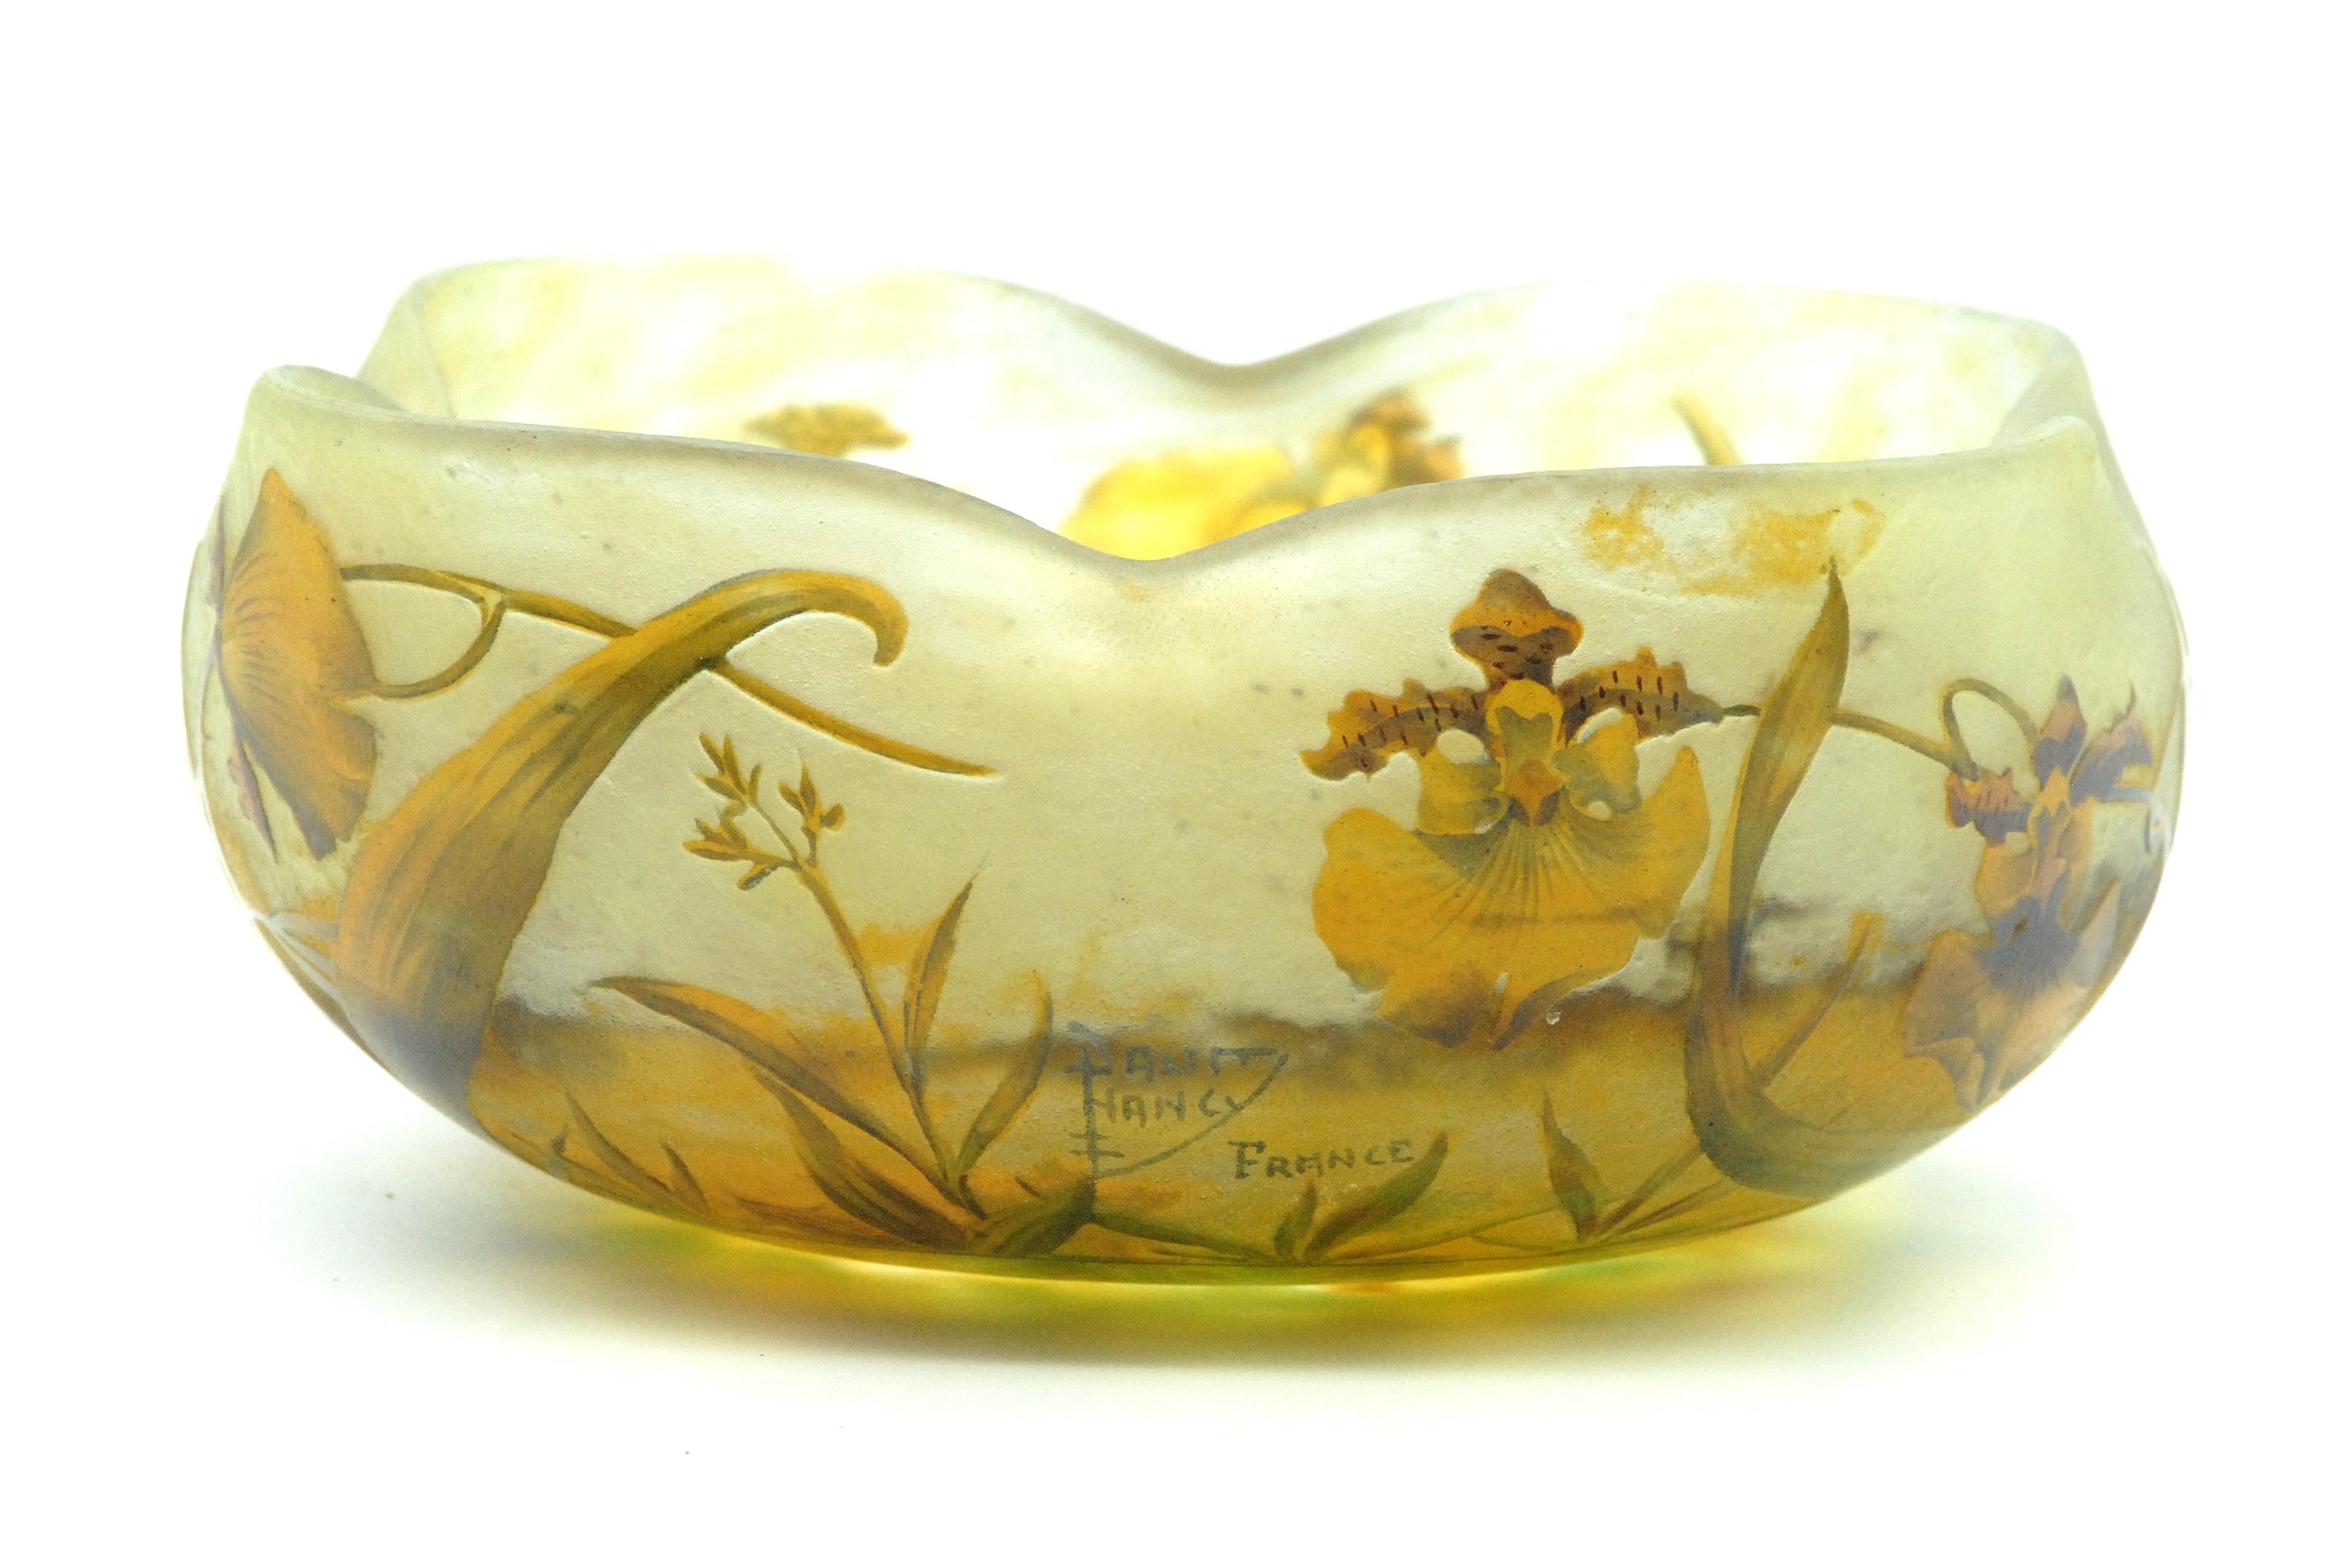 Gelbe Orchideen blühen auf dieser seltenen Kamee-Kunstglasschale der berühmten französischen Glasmanufaktur Daum, Nancy. Das anmutige Gefäß hat einen gewellten Rand und zarte, wehmütige Blumen vor einem gelben Hintergrund in der Abendsonne.